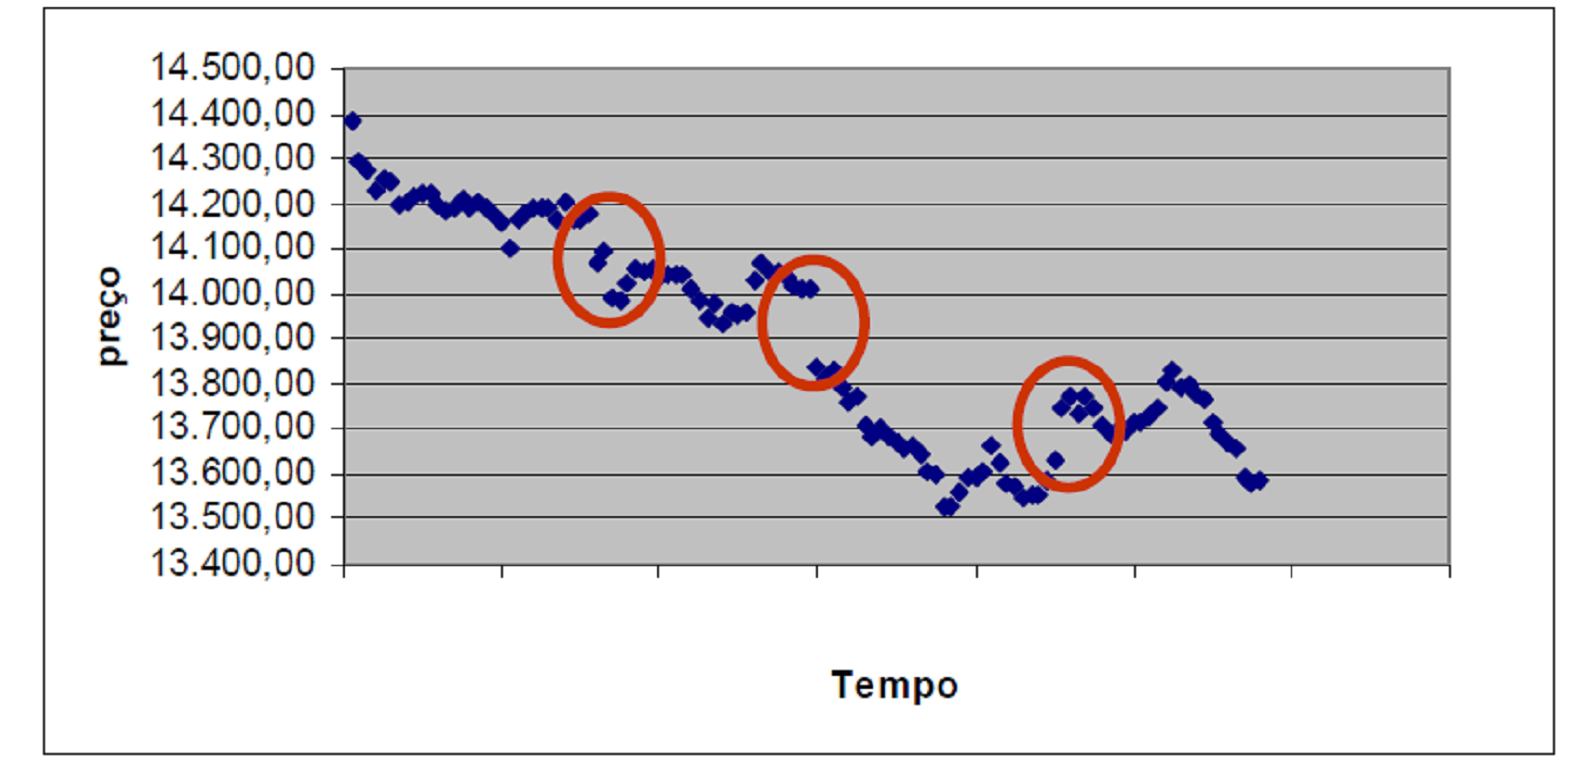 50 Pelo gráfico nota-se que a hipótese de que a correlação nula é rejeitada, havendo uma correlação negativa para retornos sucessivos de 15 minutos.